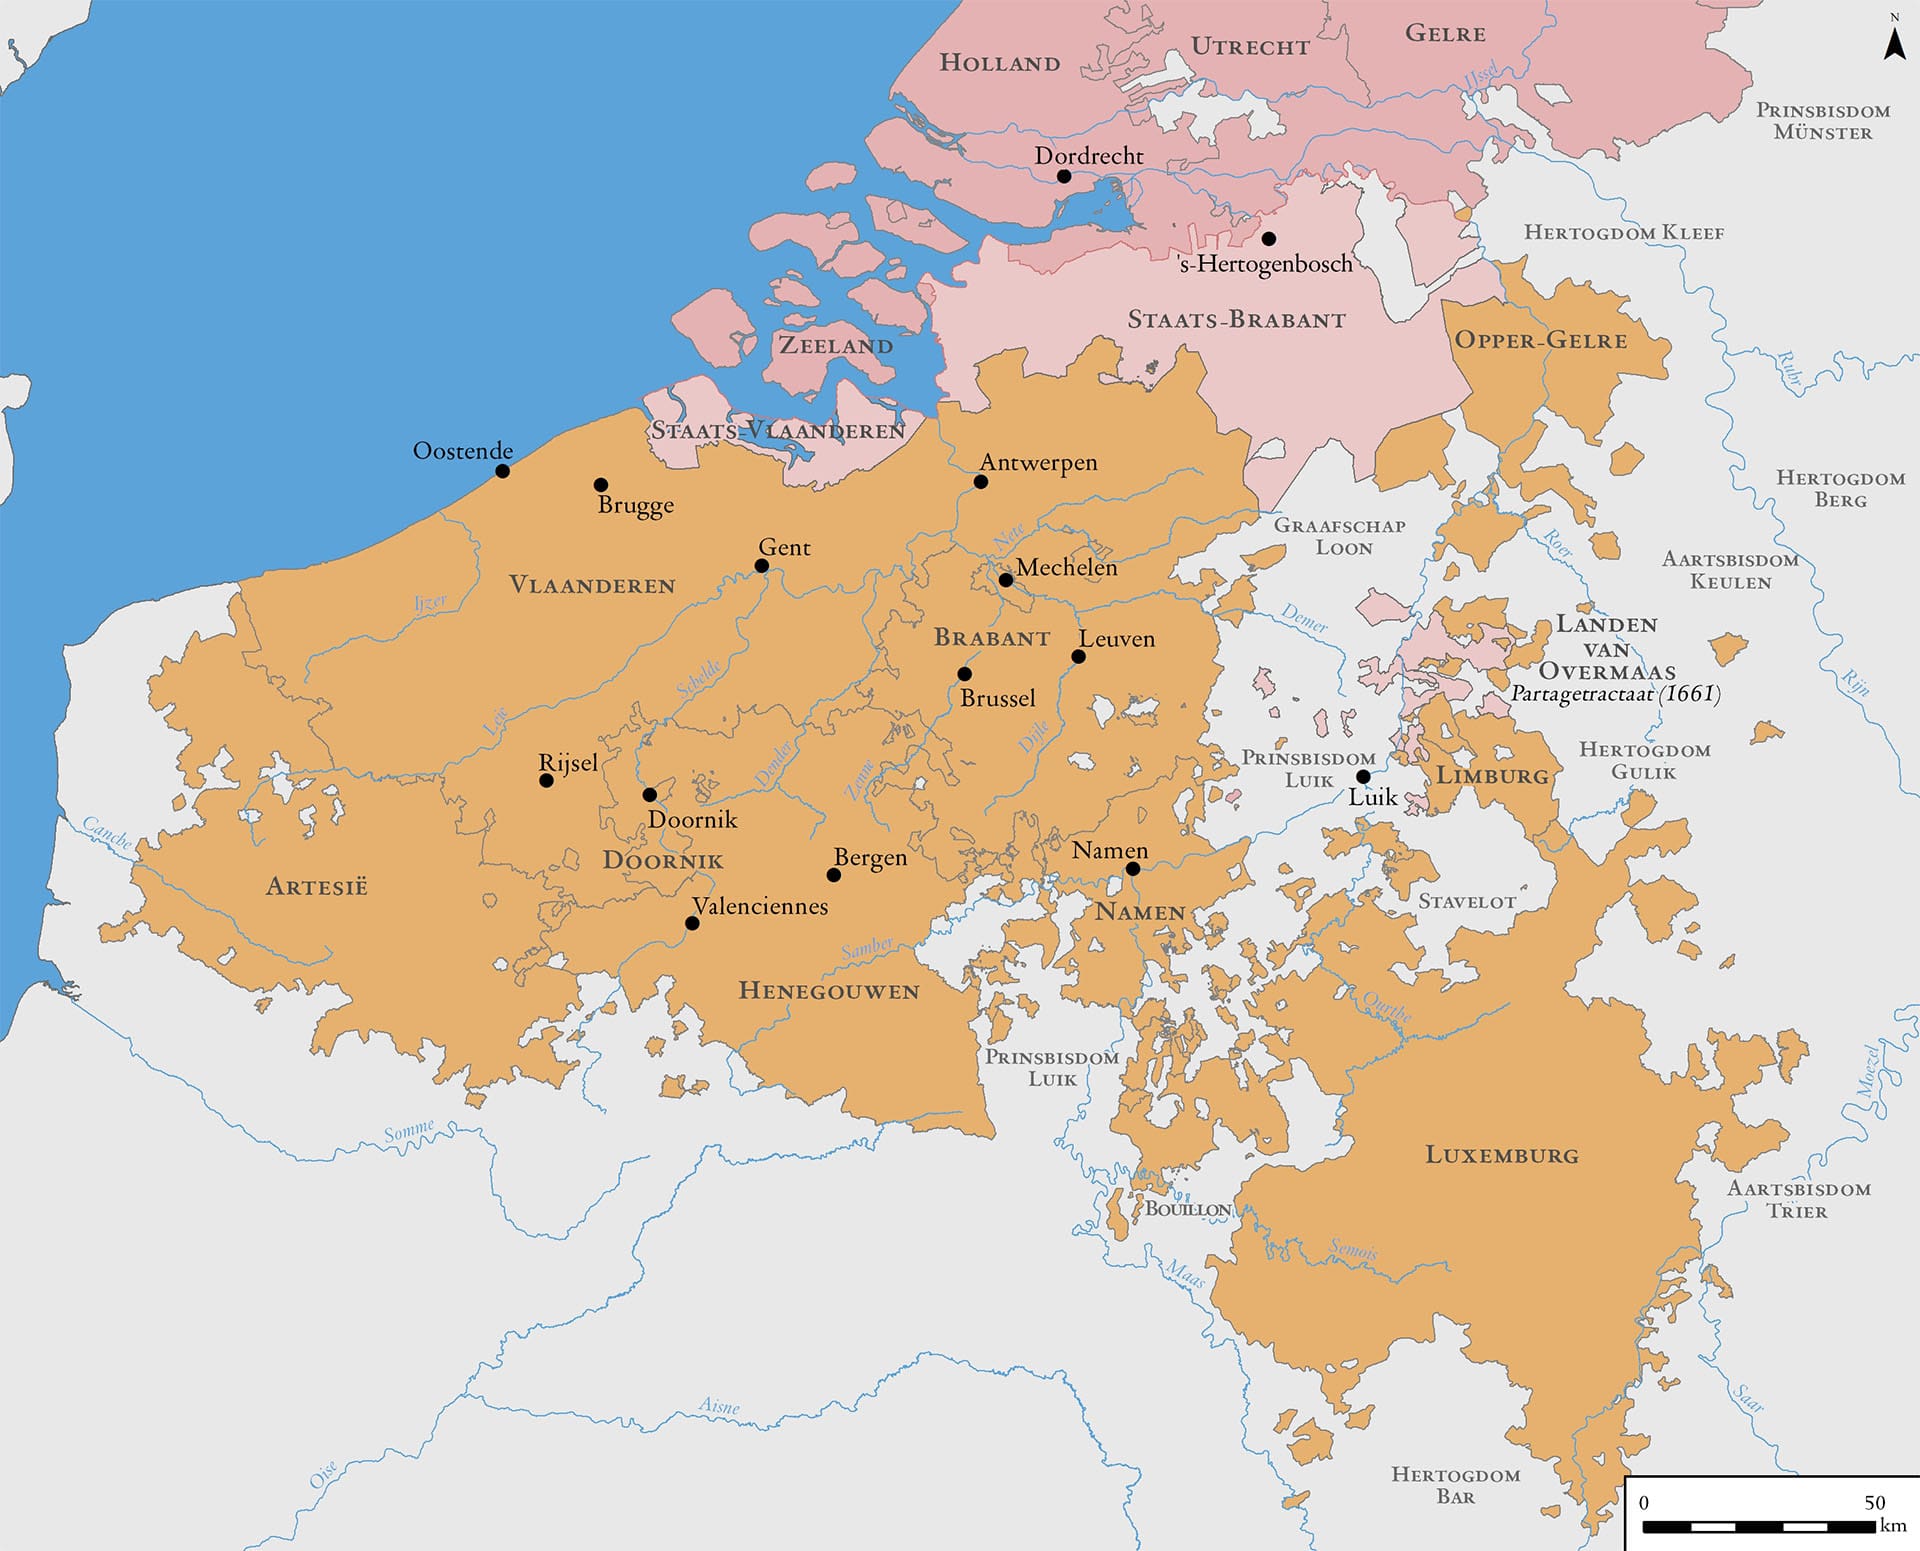 De scheuring van de Nederlanden, 1568-1648